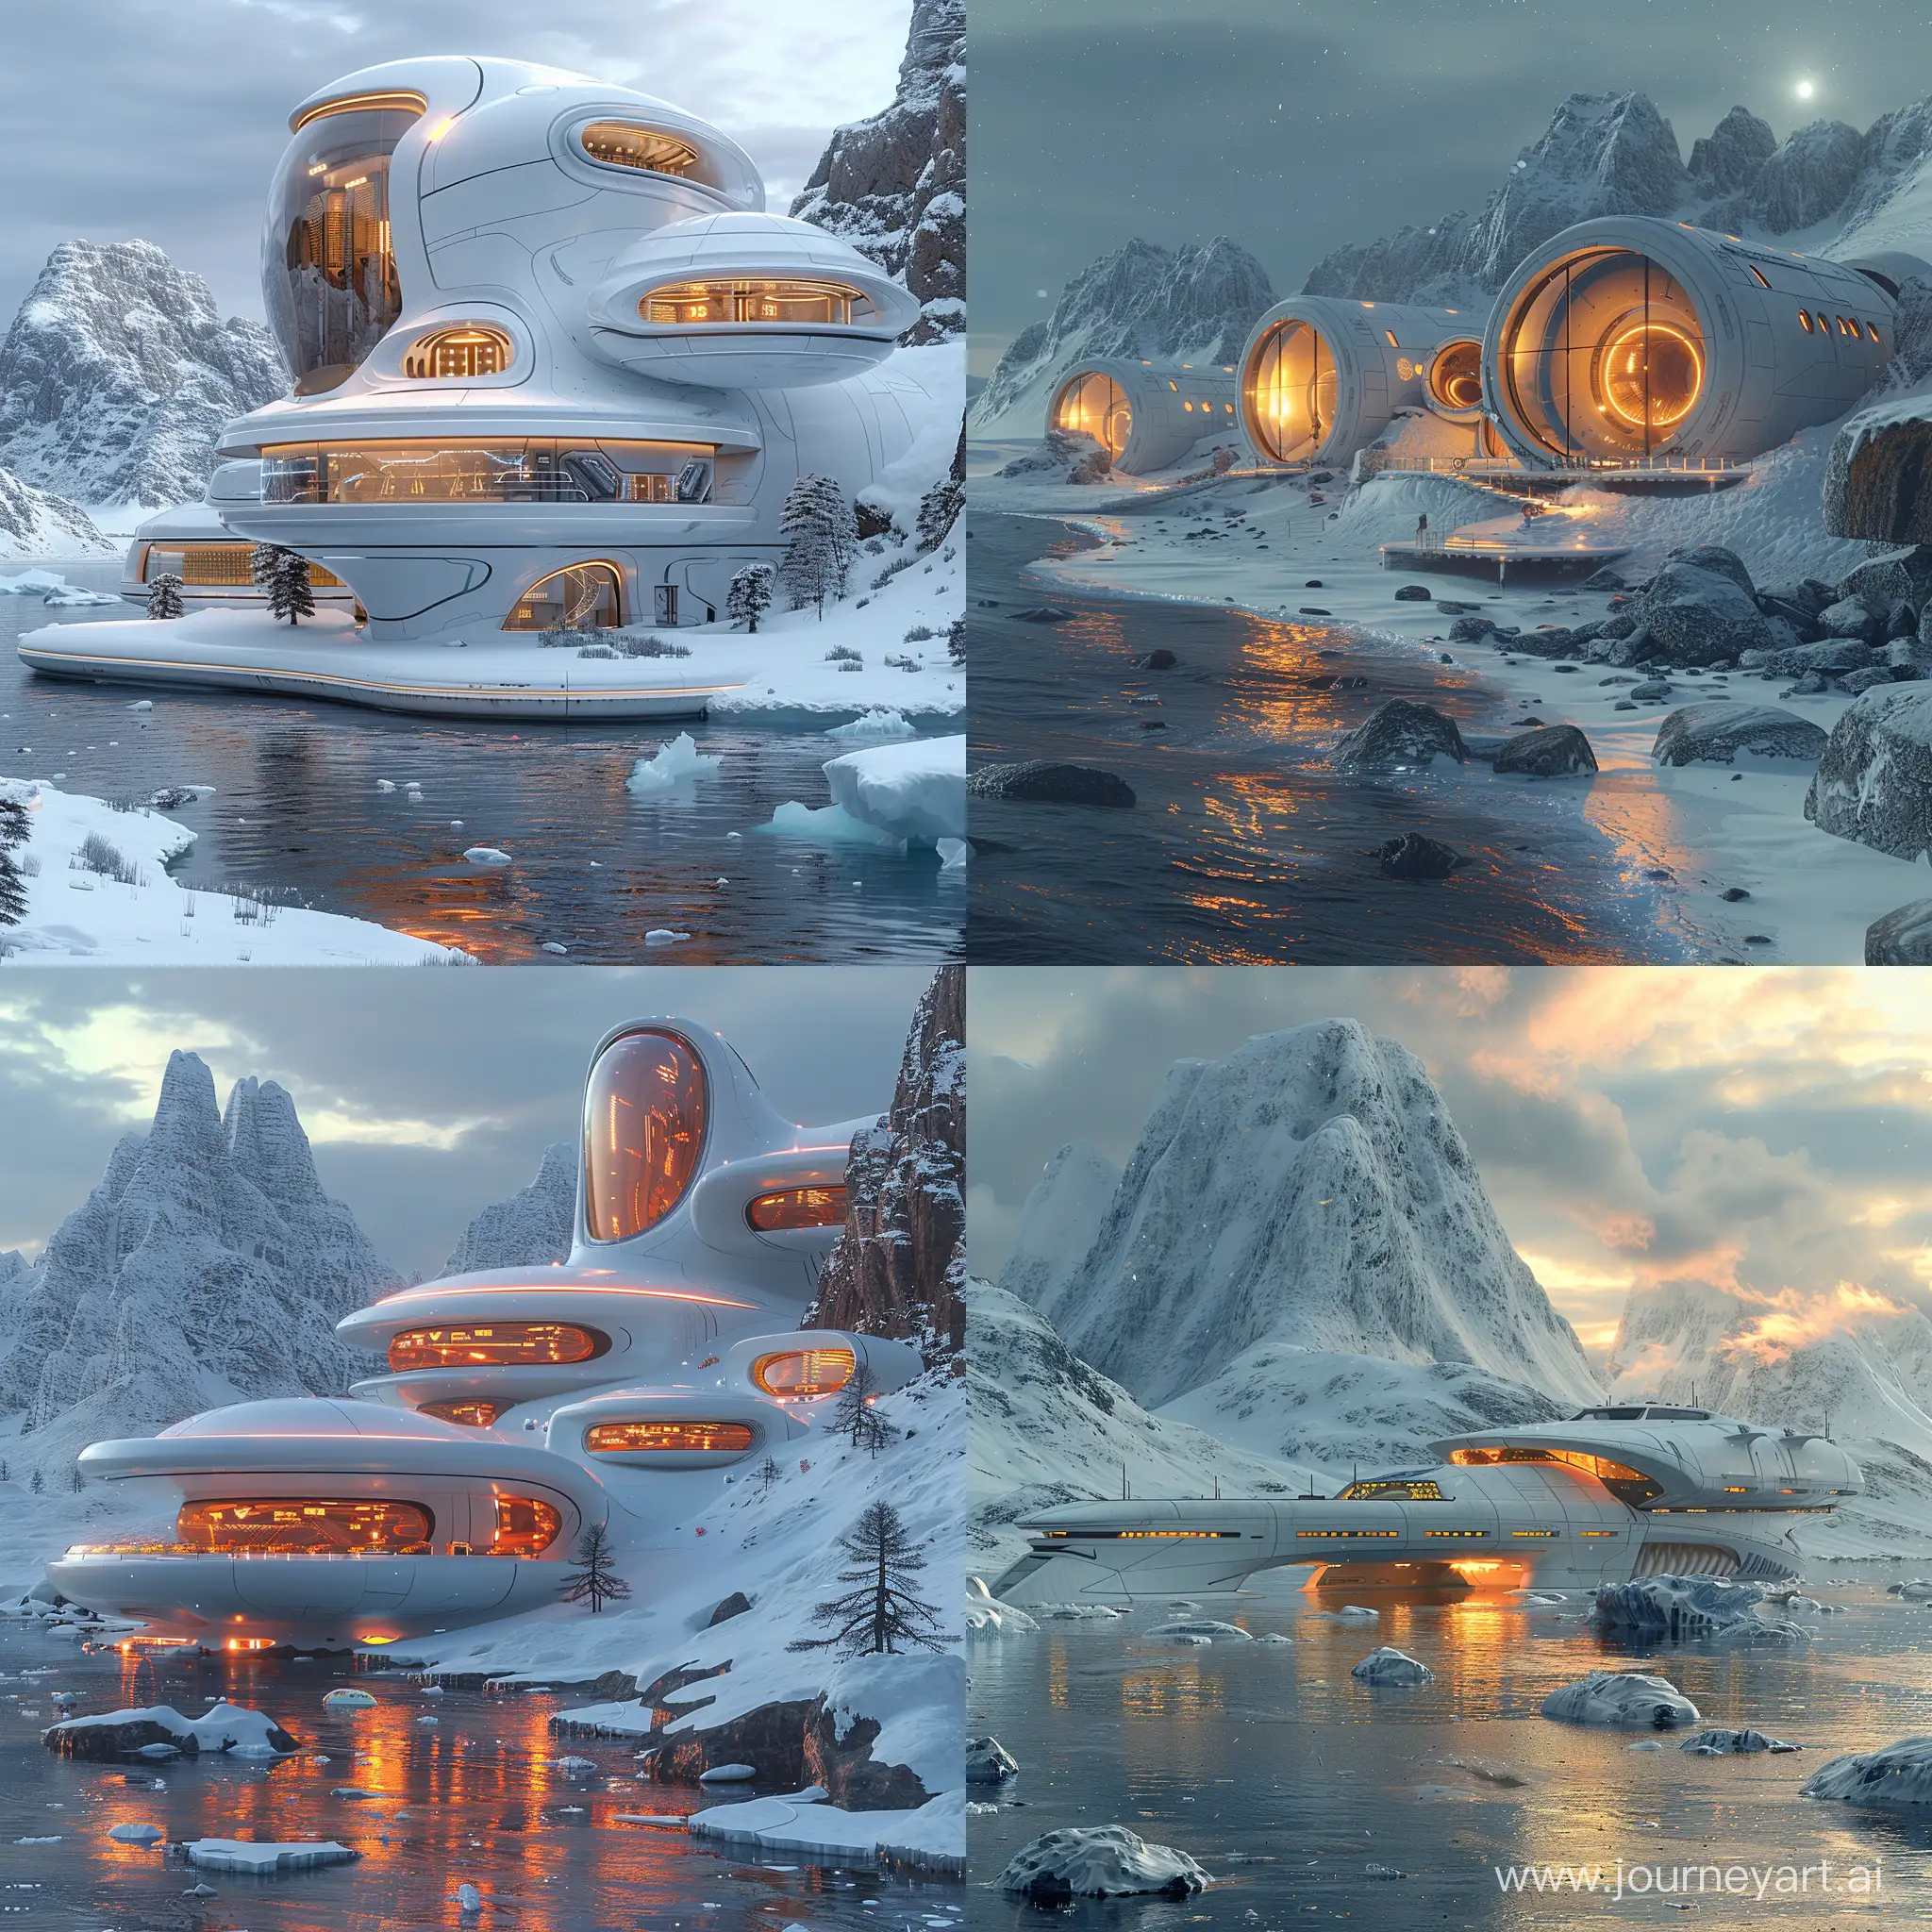 Futuristic-HighTech-Antarctica-SciFi-Landscape-with-Octane-Render